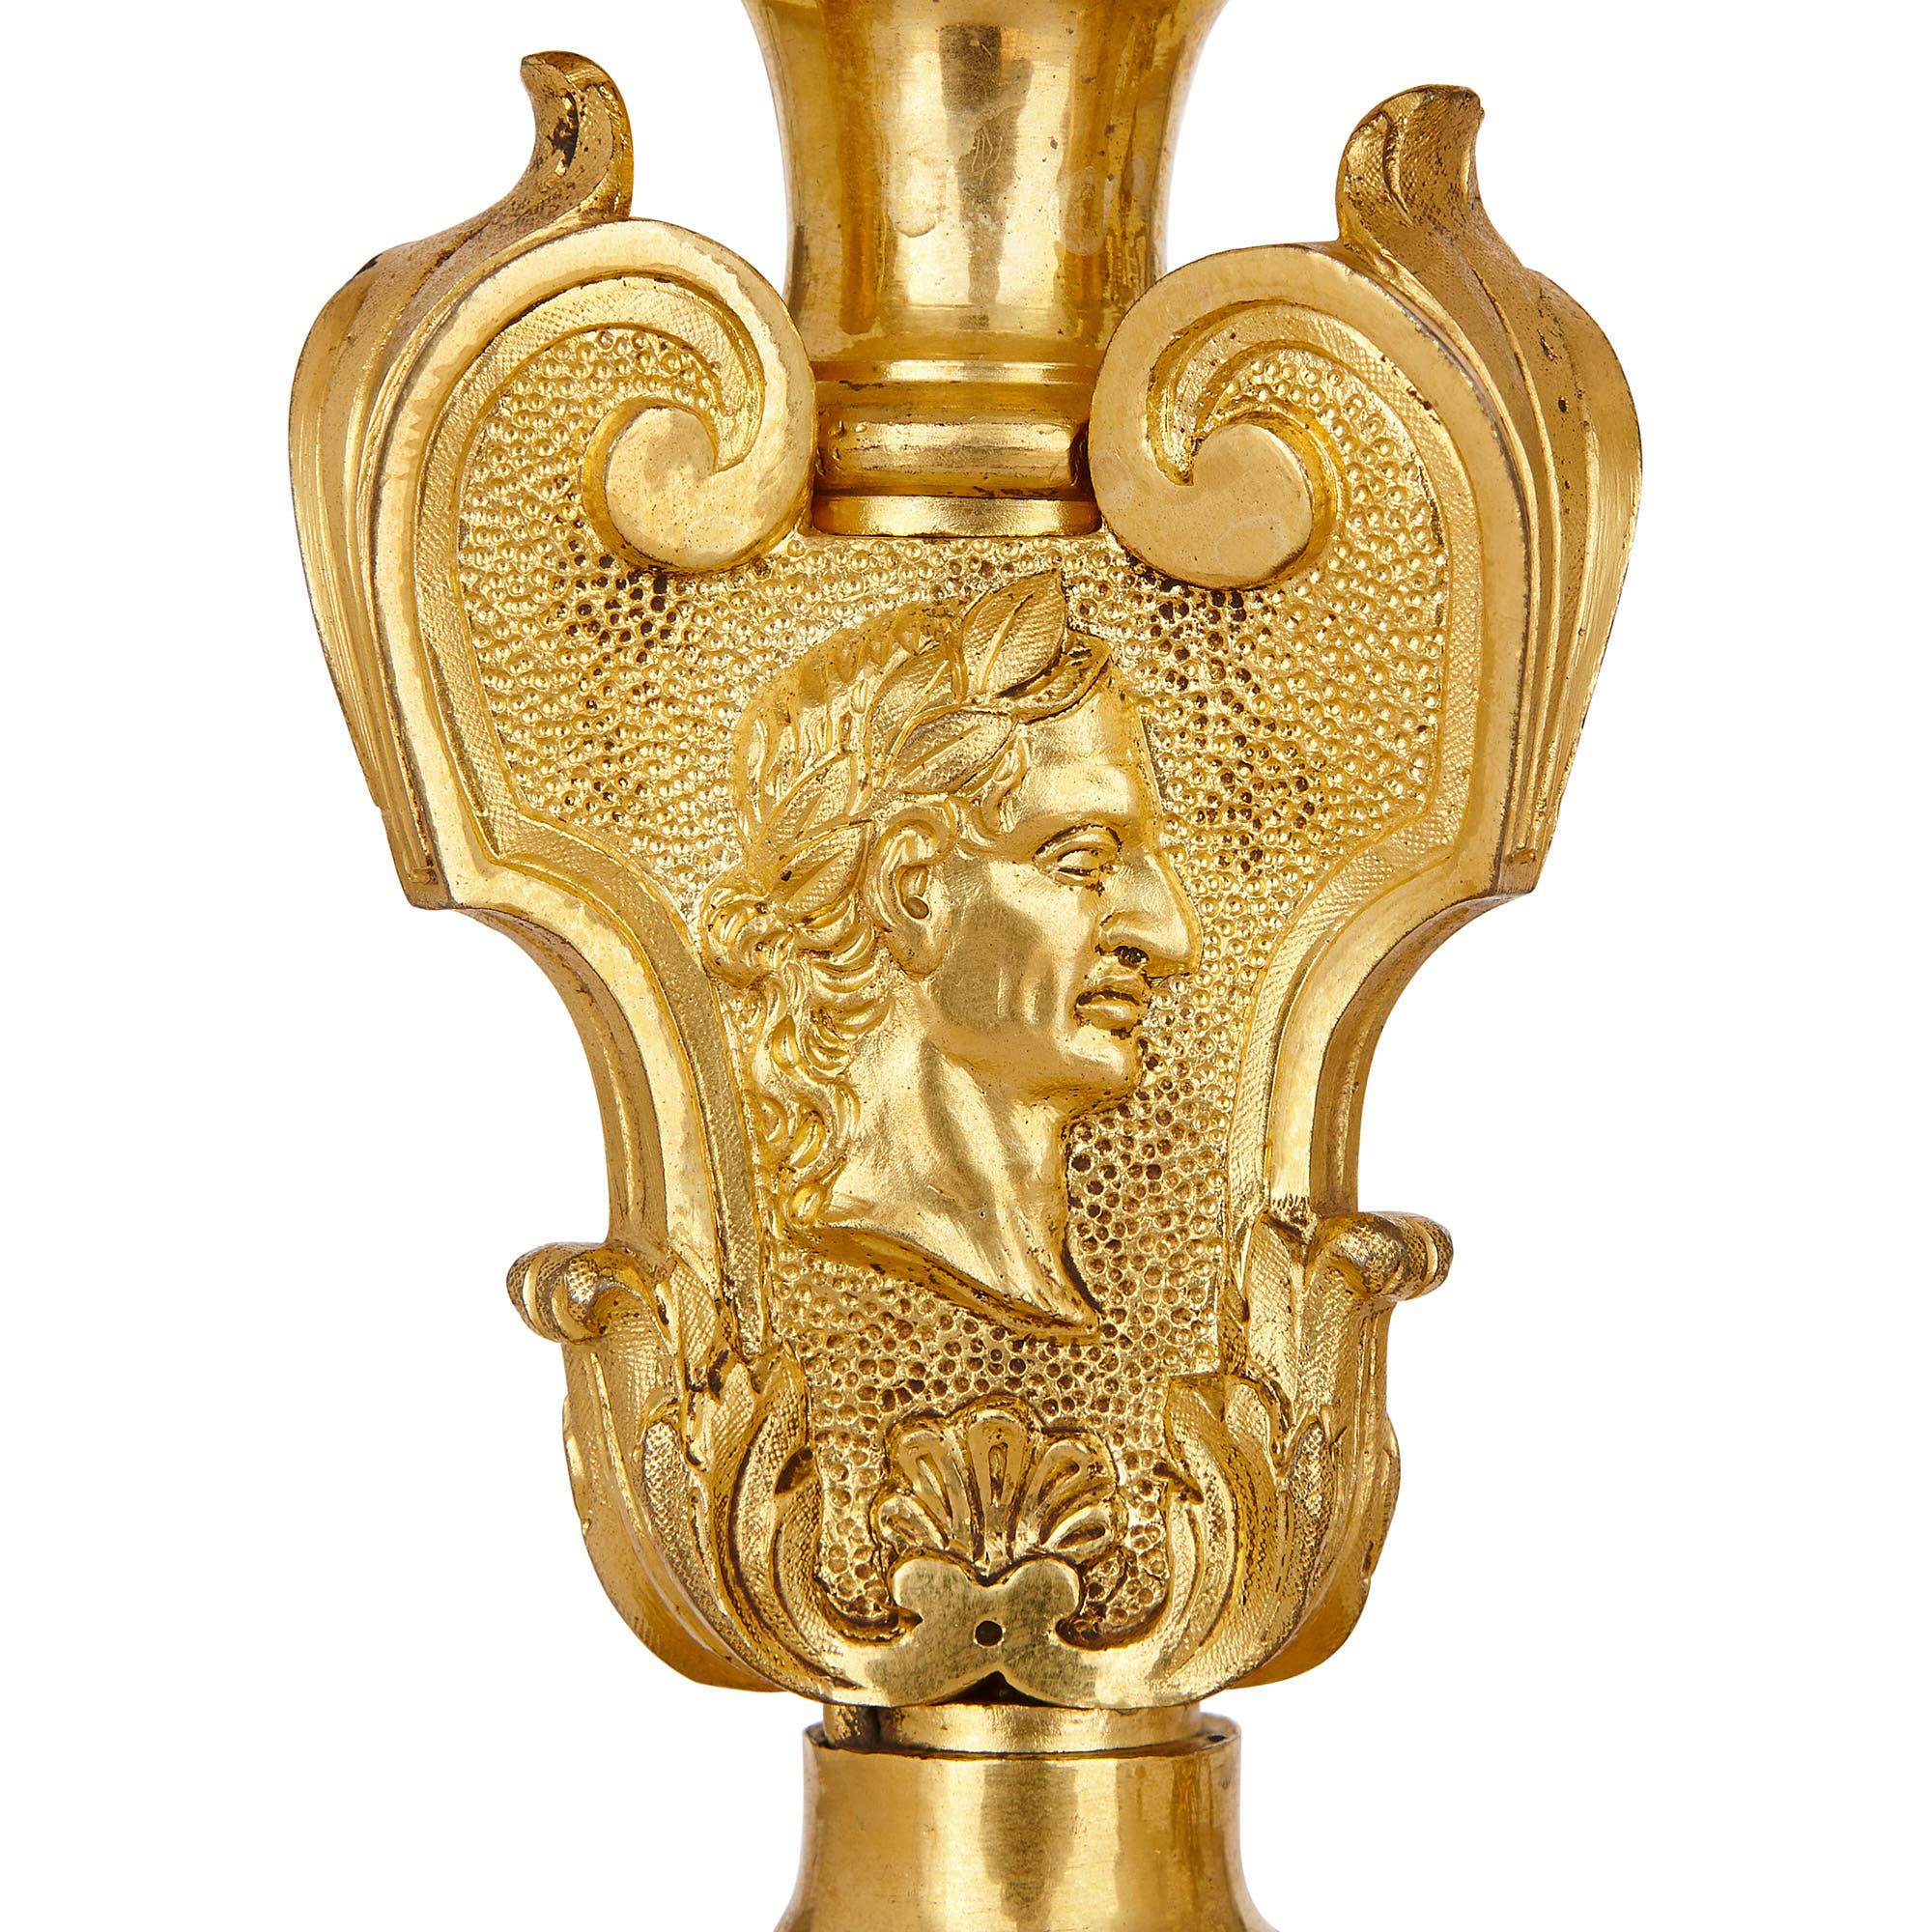 Diese vergoldeten Bronzegirandolen (ornamentale, verzweigte Halterungen für Kerzen oder andere Lichter) wurden Ende des 19. Jahrhunderts in Frankreich hergestellt. Sie sind einem berühmten Paar Girandolen im Stil Ludwigs XIV. nachempfunden, das von